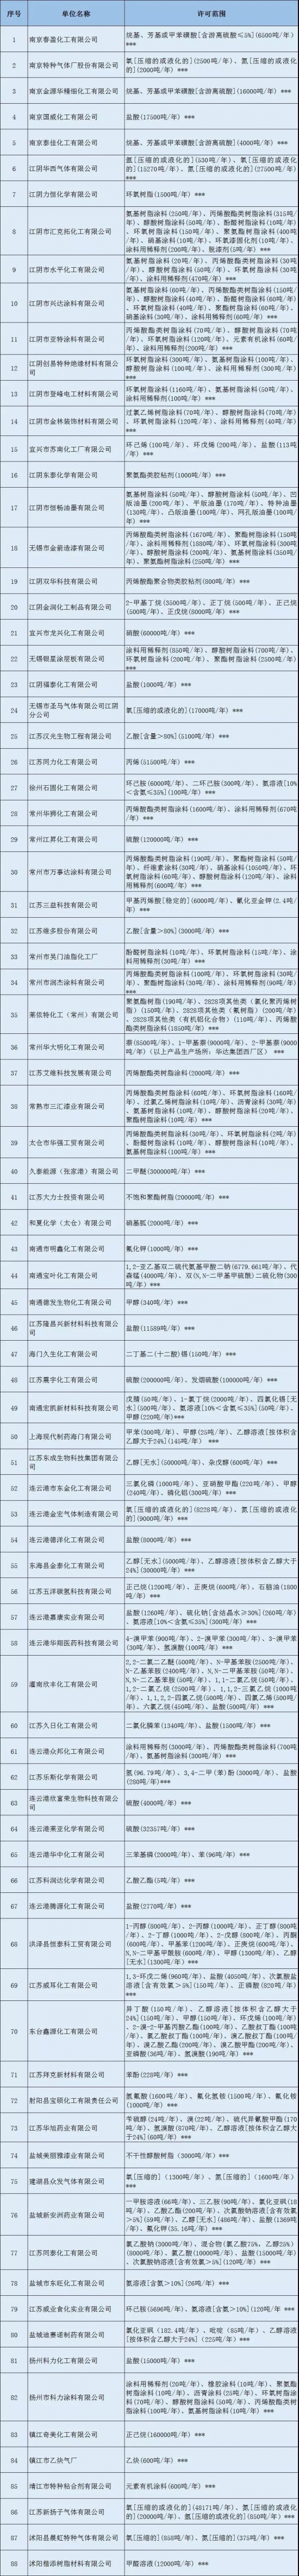 88家危化品生产企业被注销安全生产许可证 中国润滑油网